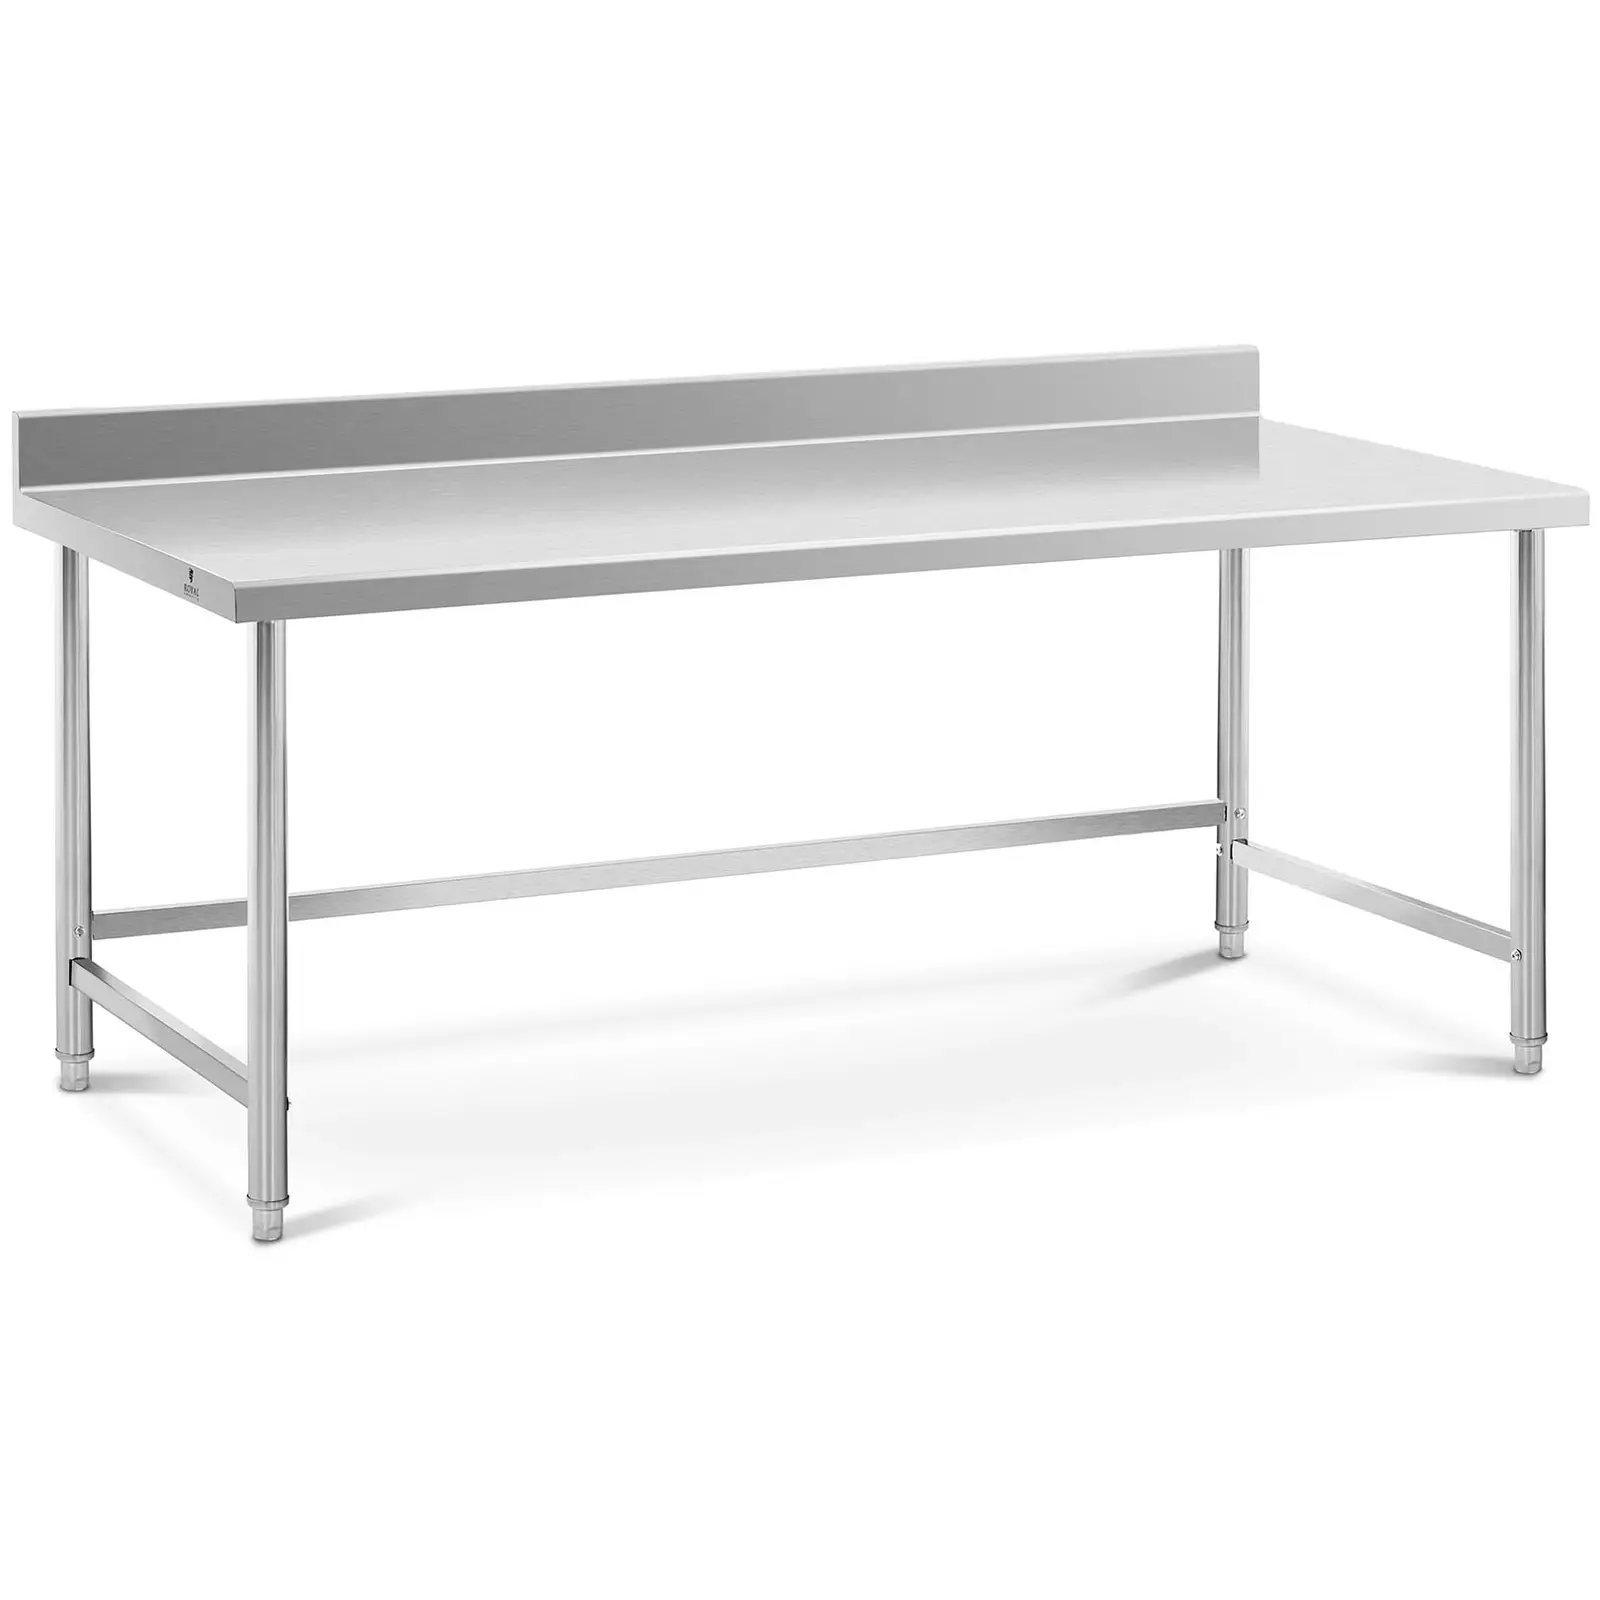 Pracovný stôl z nehrdzavejúcej ocele - 200 x 90 cm - nosnosť 100 kg